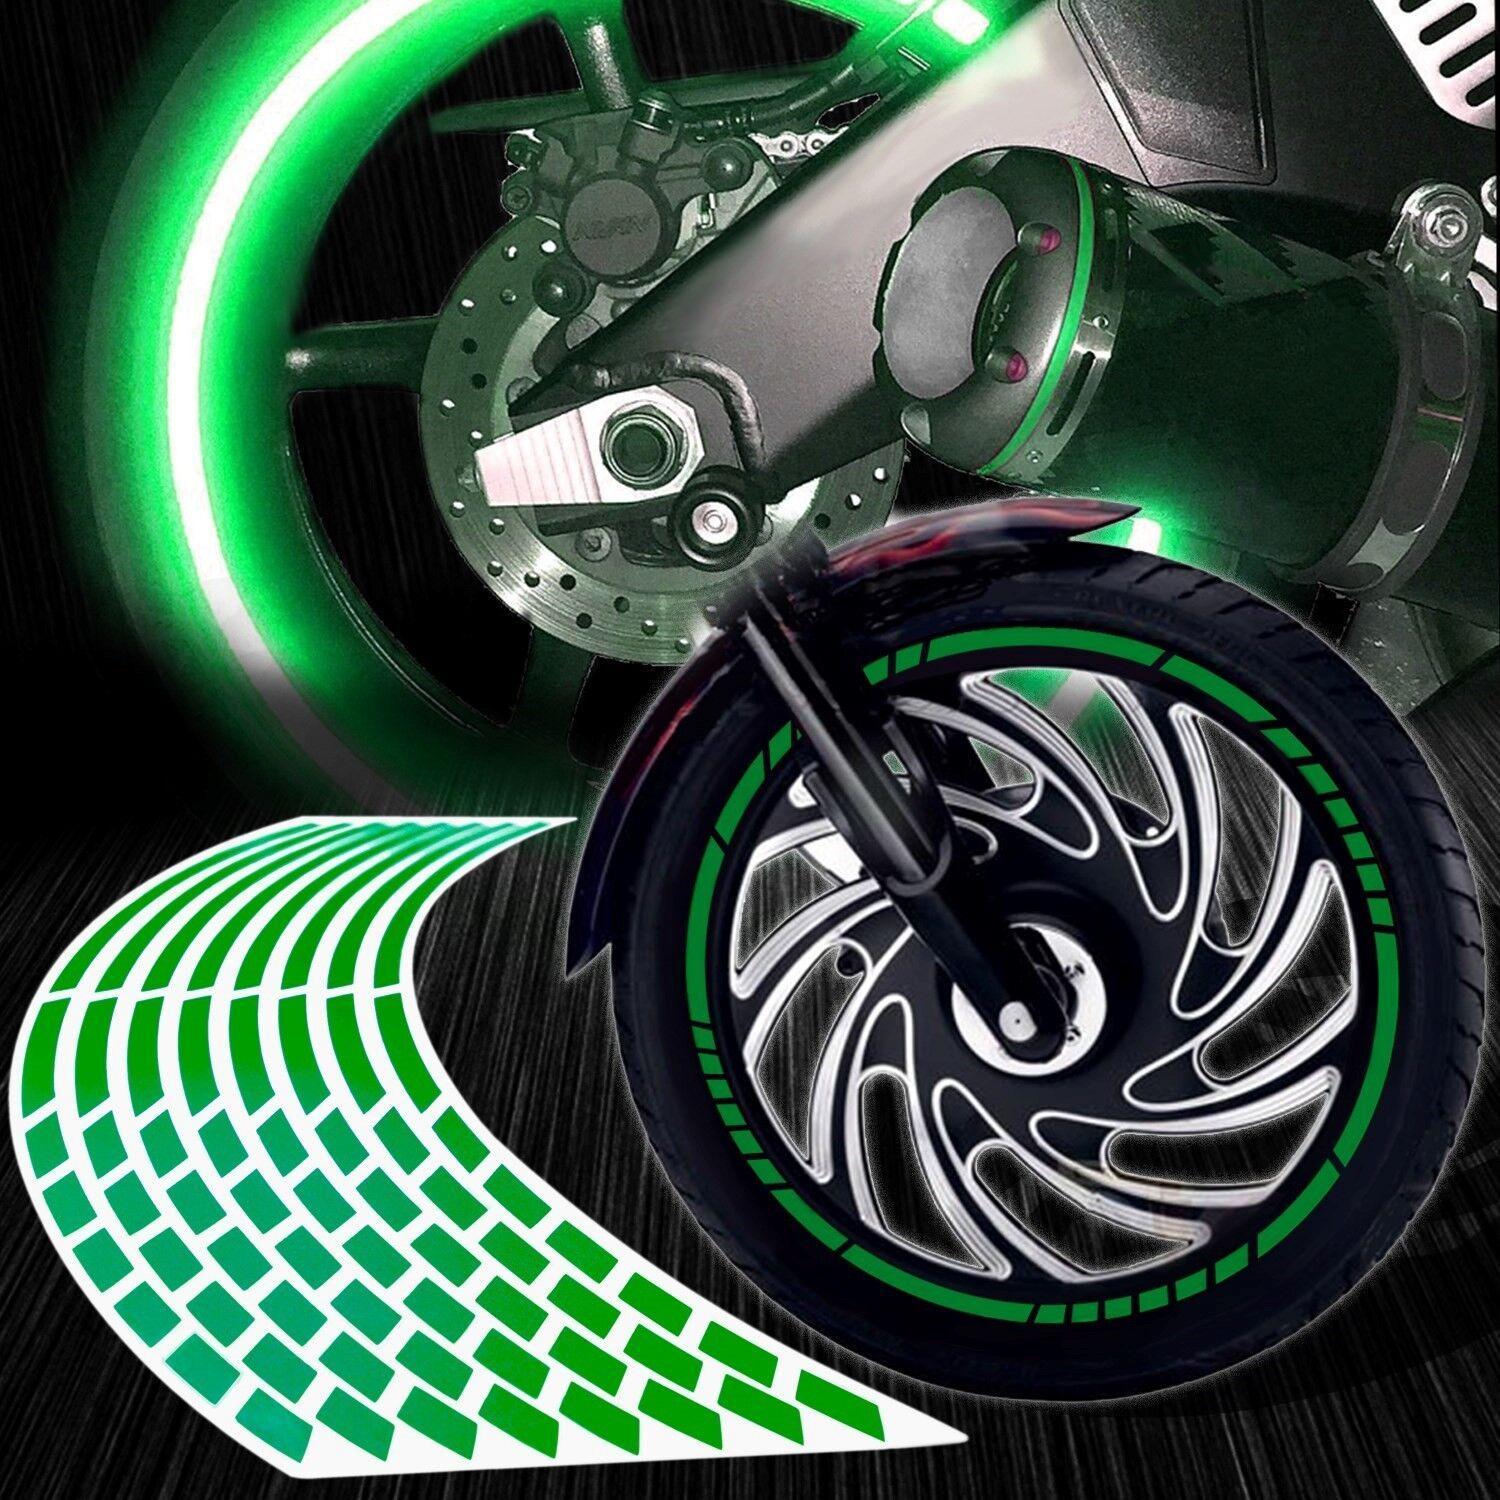 Kit de stickers Reflectivos para Llantas de Motos Bicicletas y Autos, Seguridad y Decoración - DSE